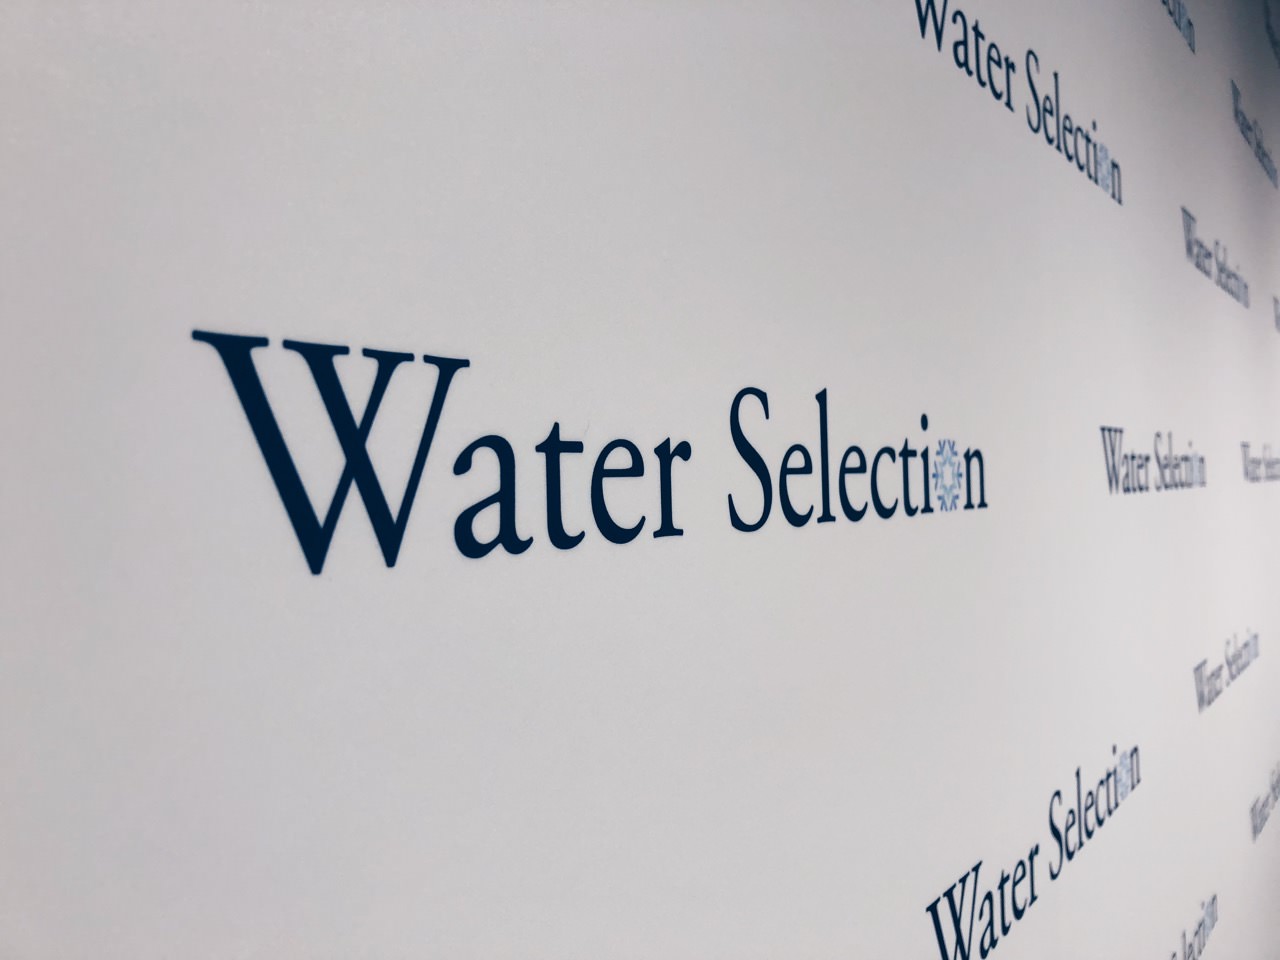 Water Selection 品水師嚴選 》兩位台灣侍水師所創立專門販售水的網購平台